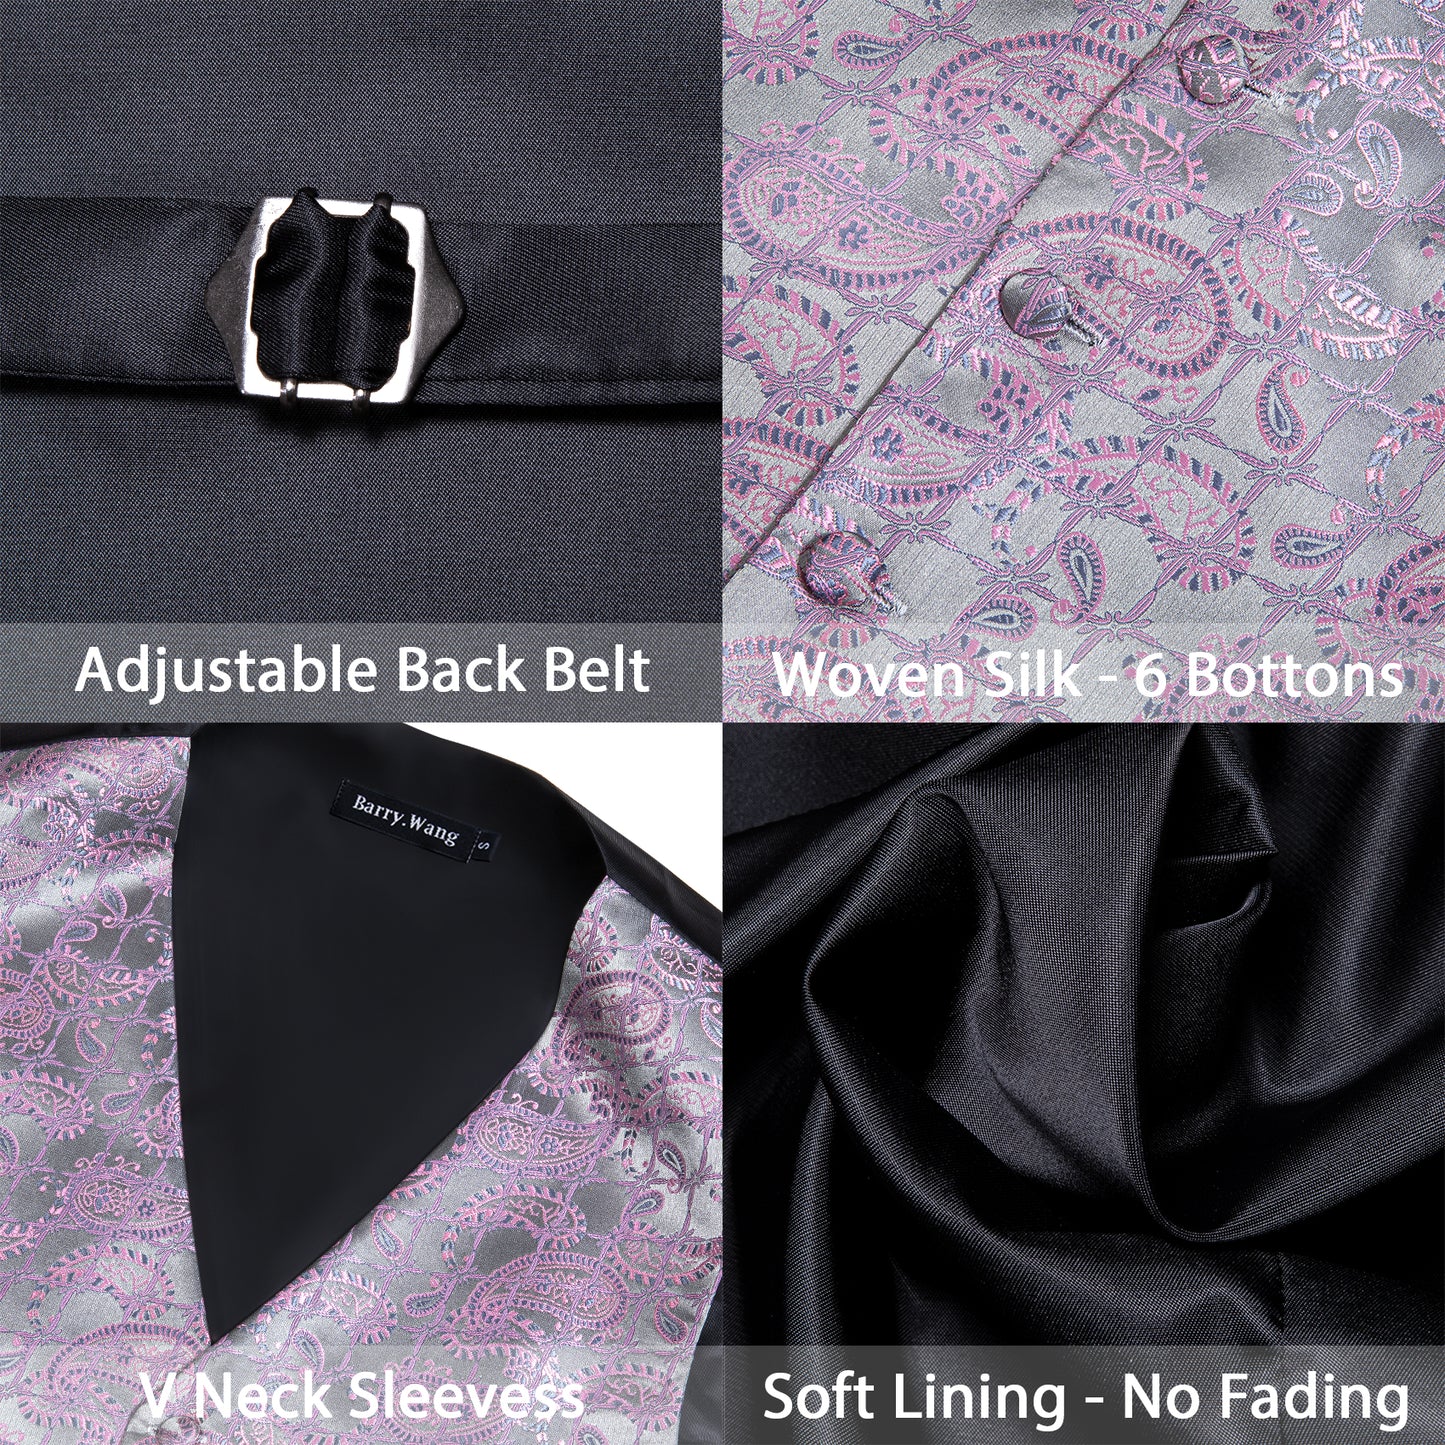 Designer Floral Waistcoat Silky Novelty Vest Violet